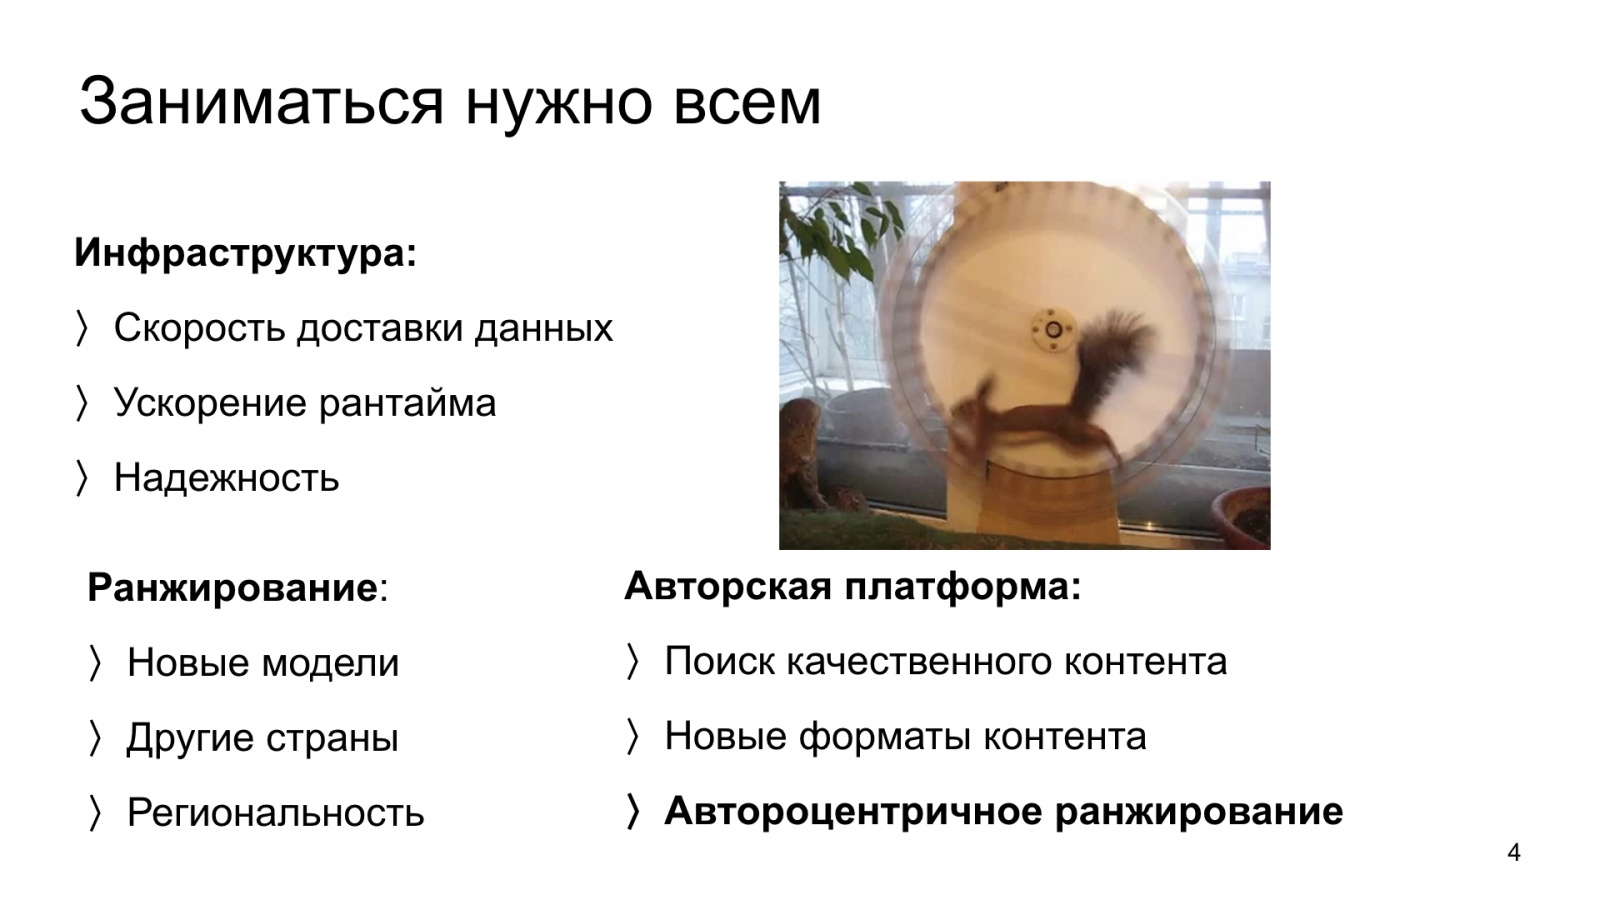 Автороцентричное ранжирование. Доклад Яндекса о поиске релевантной аудитории для авторов Дзена - 4